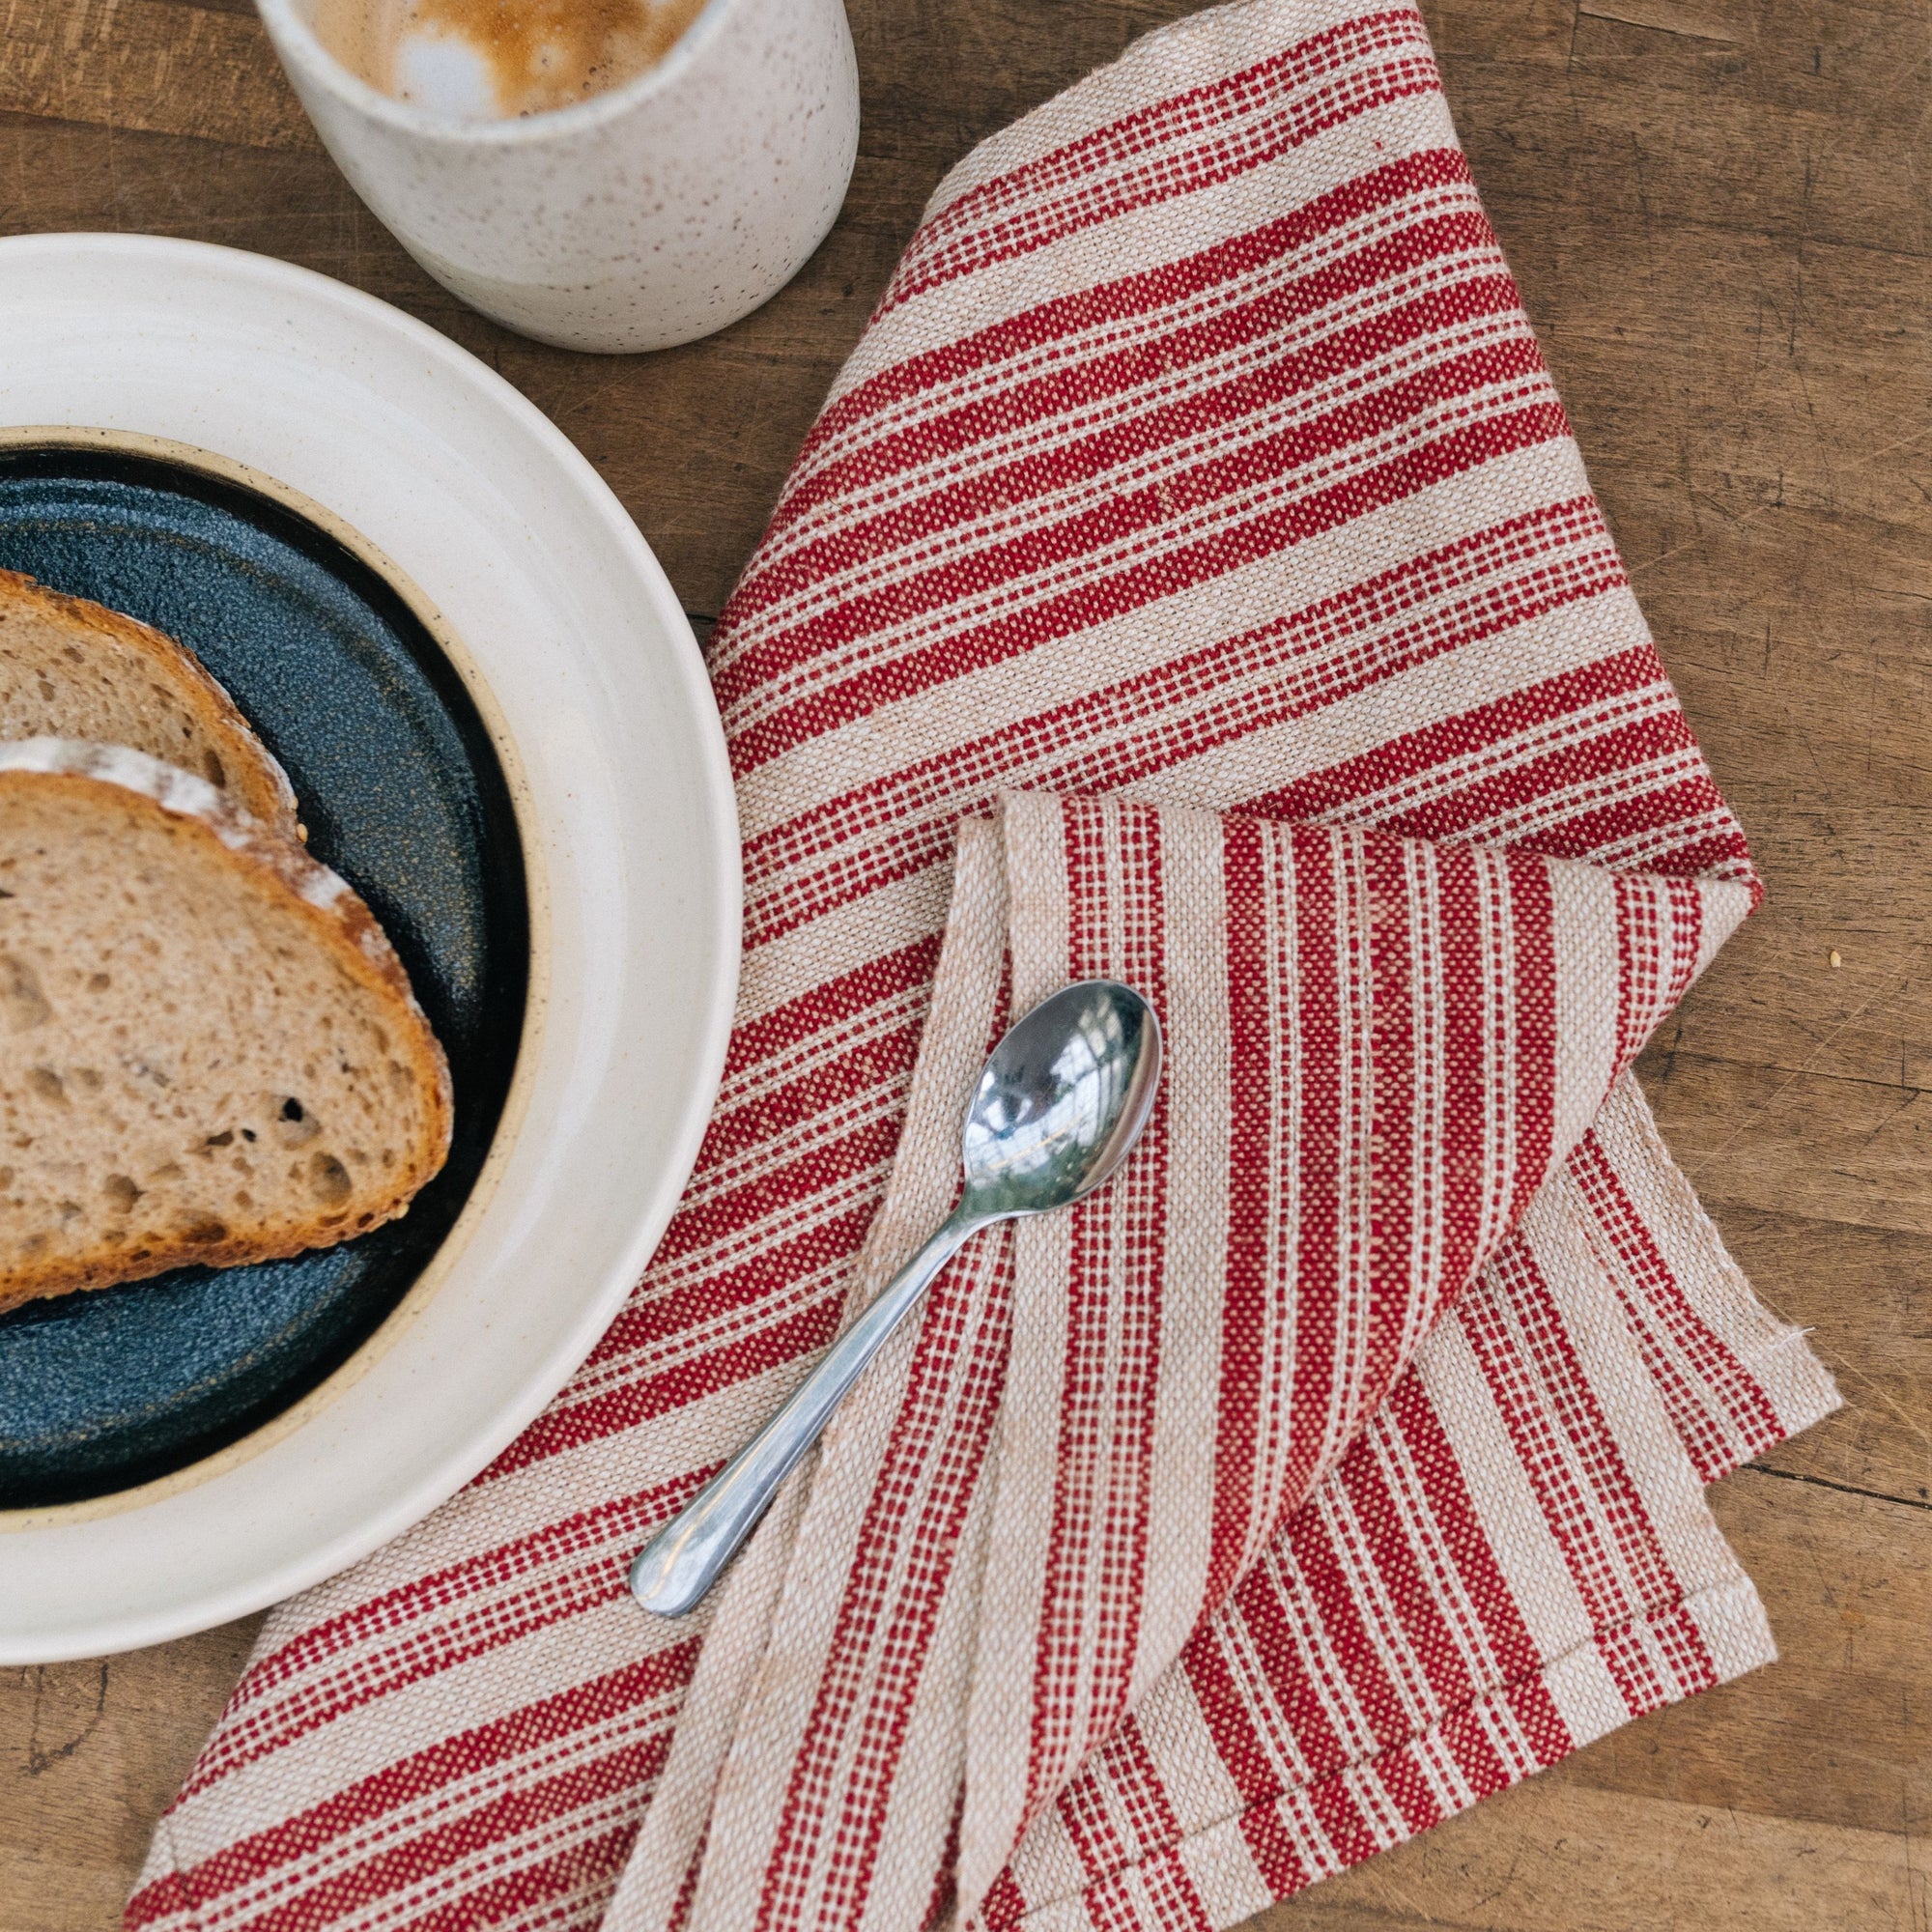 Classic Striped Tea Towel Kit